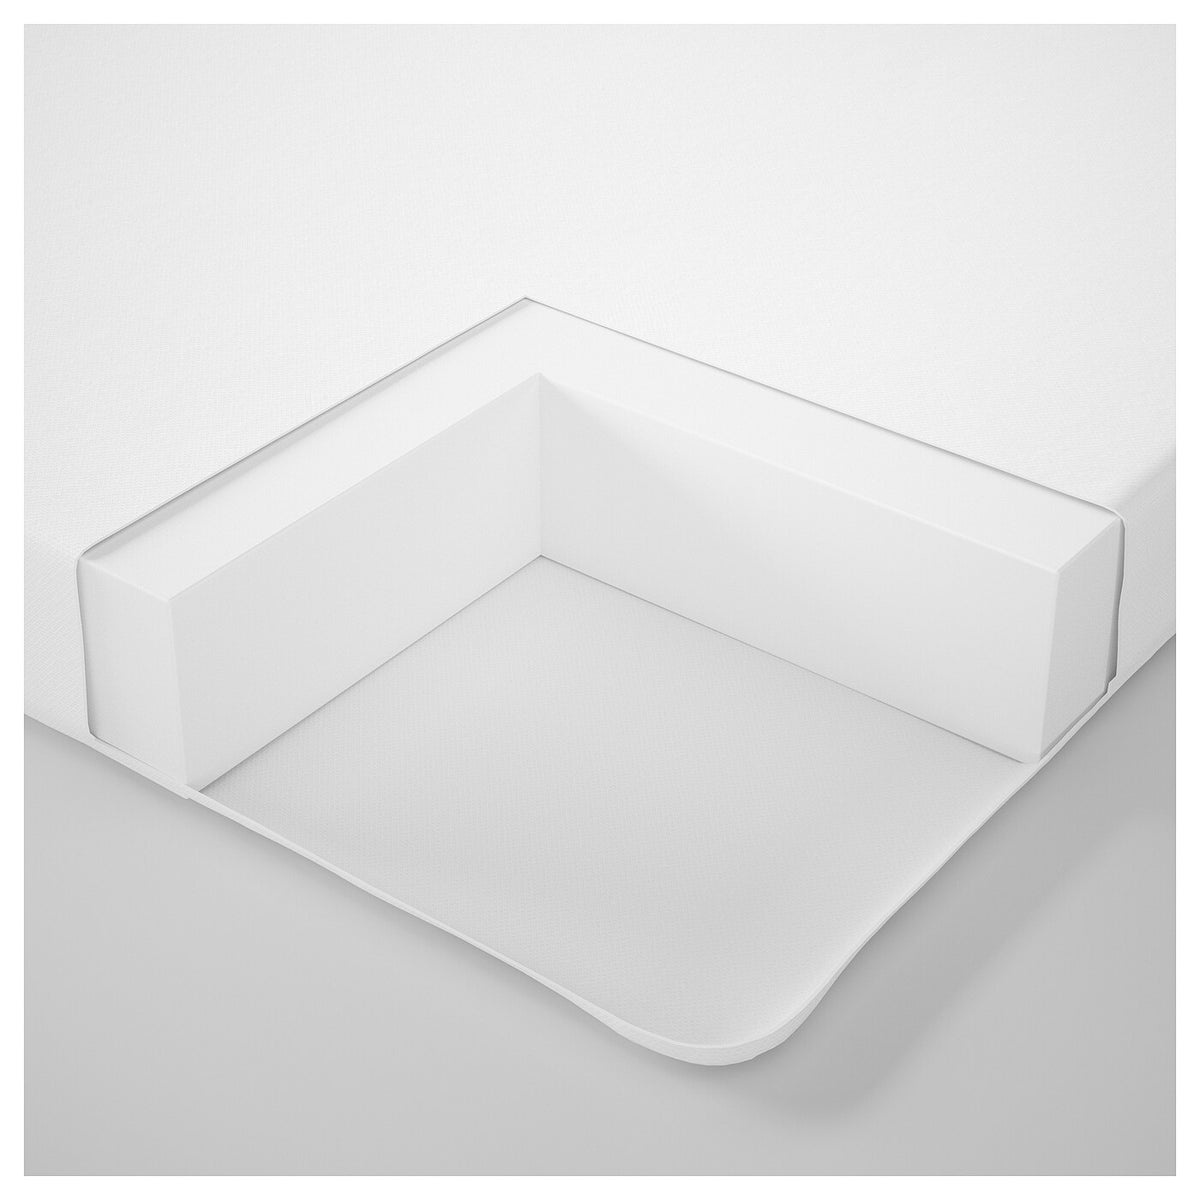 IKEA PELLEPLUTT foam mattress for cot, 120x60x6 cm